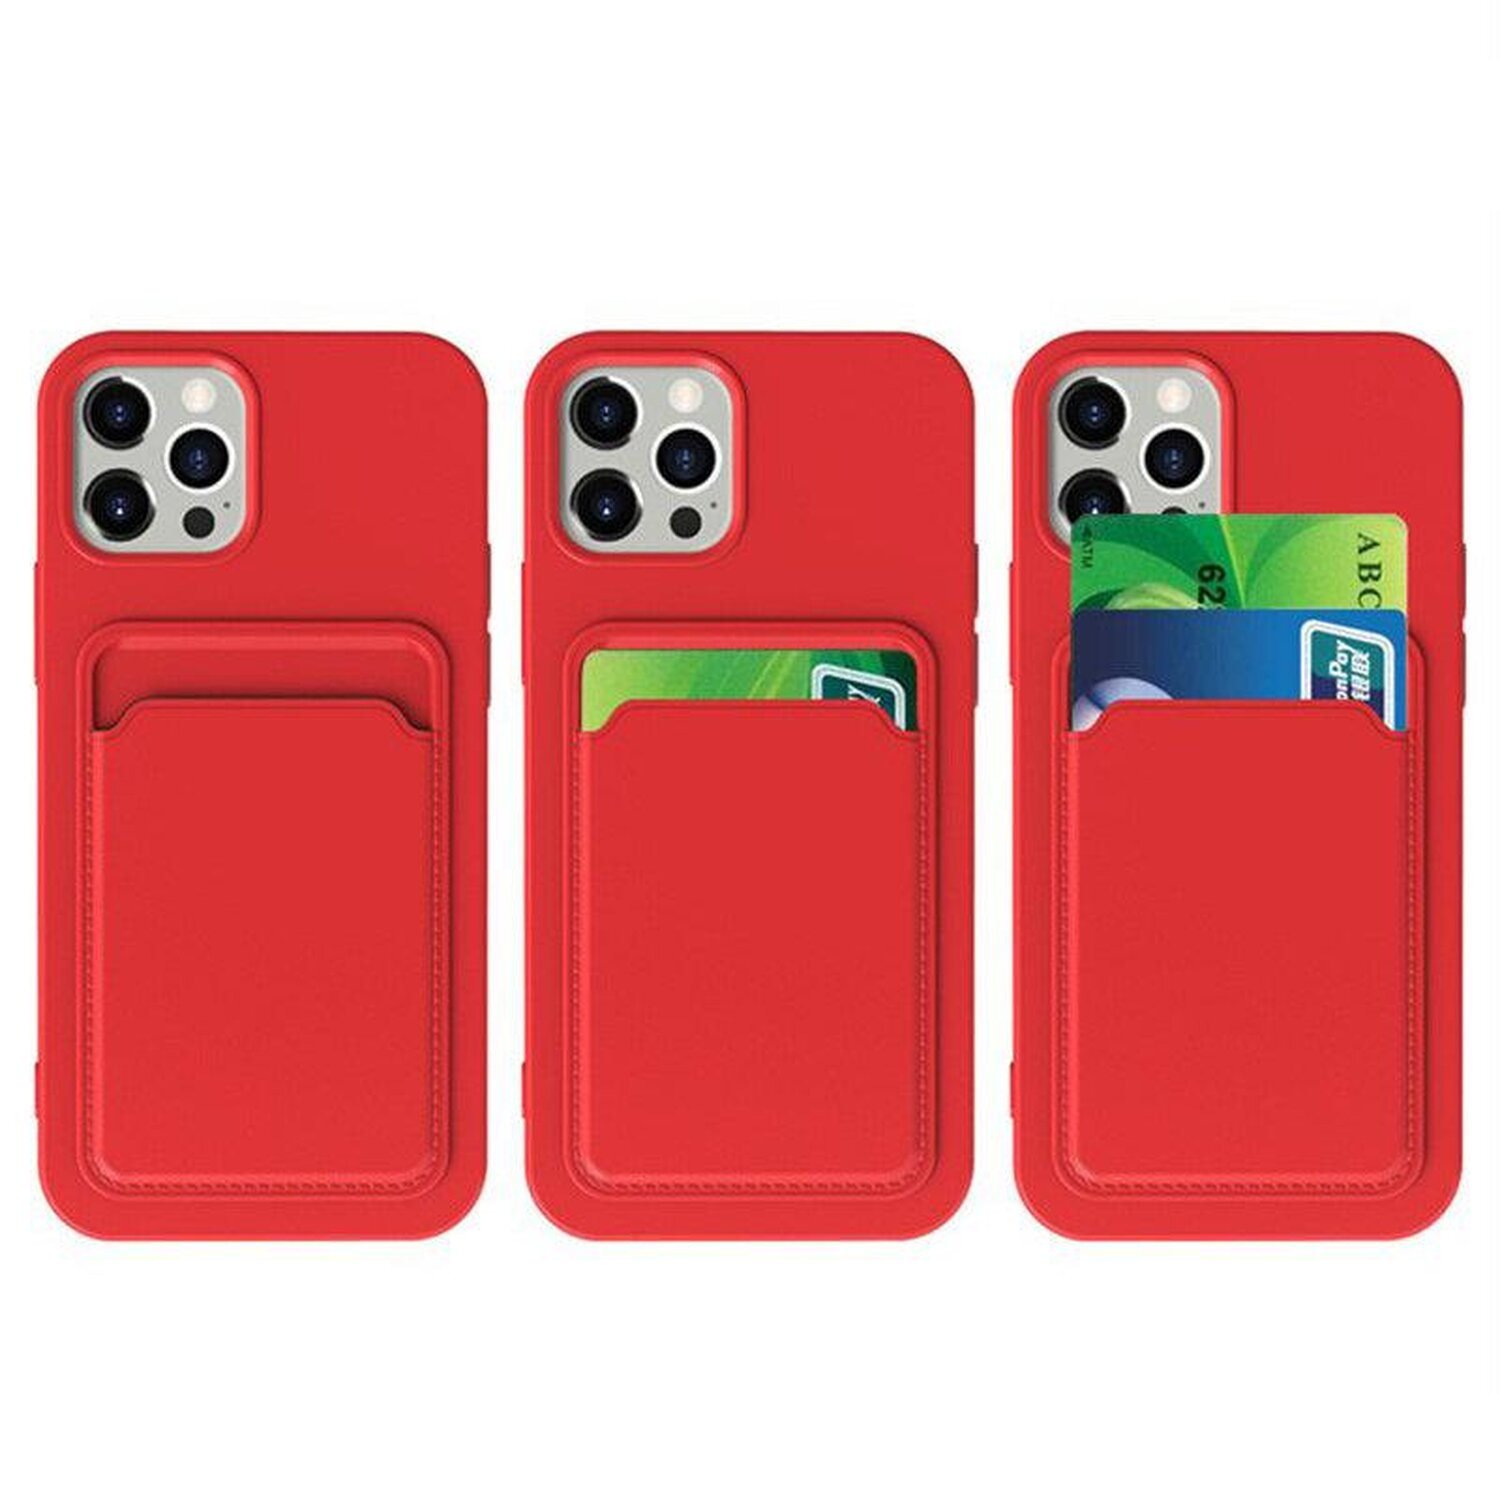 Pro Note Max, Backcover, Rot Redmi COFI Case, Card 10 Xiaomi,